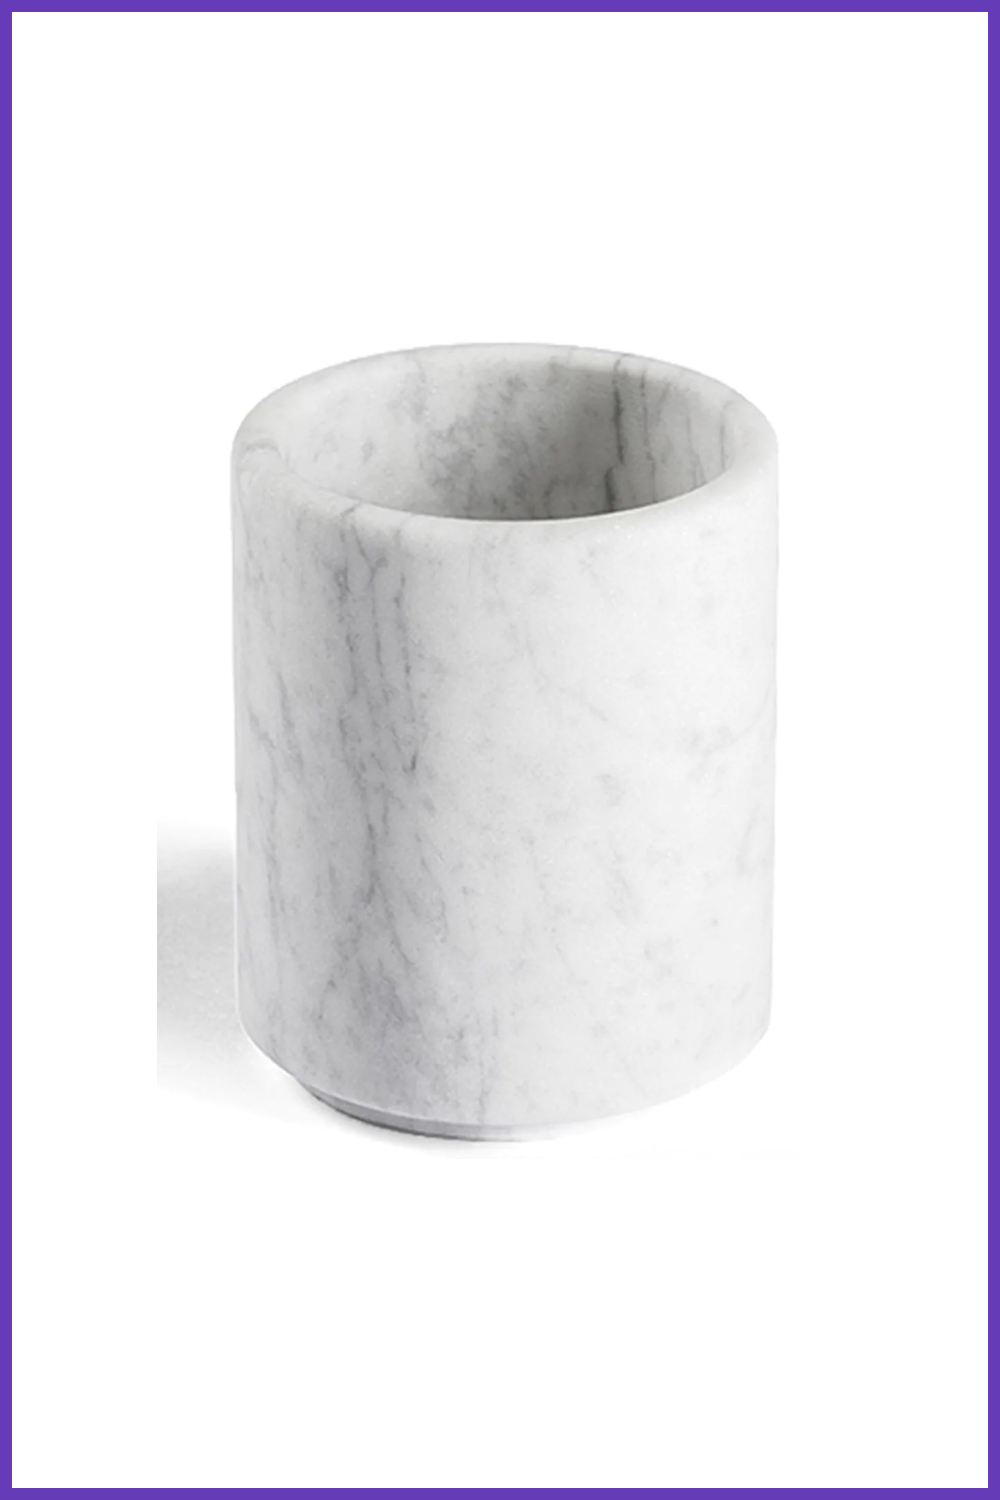 Salvatori ellipse marble container.